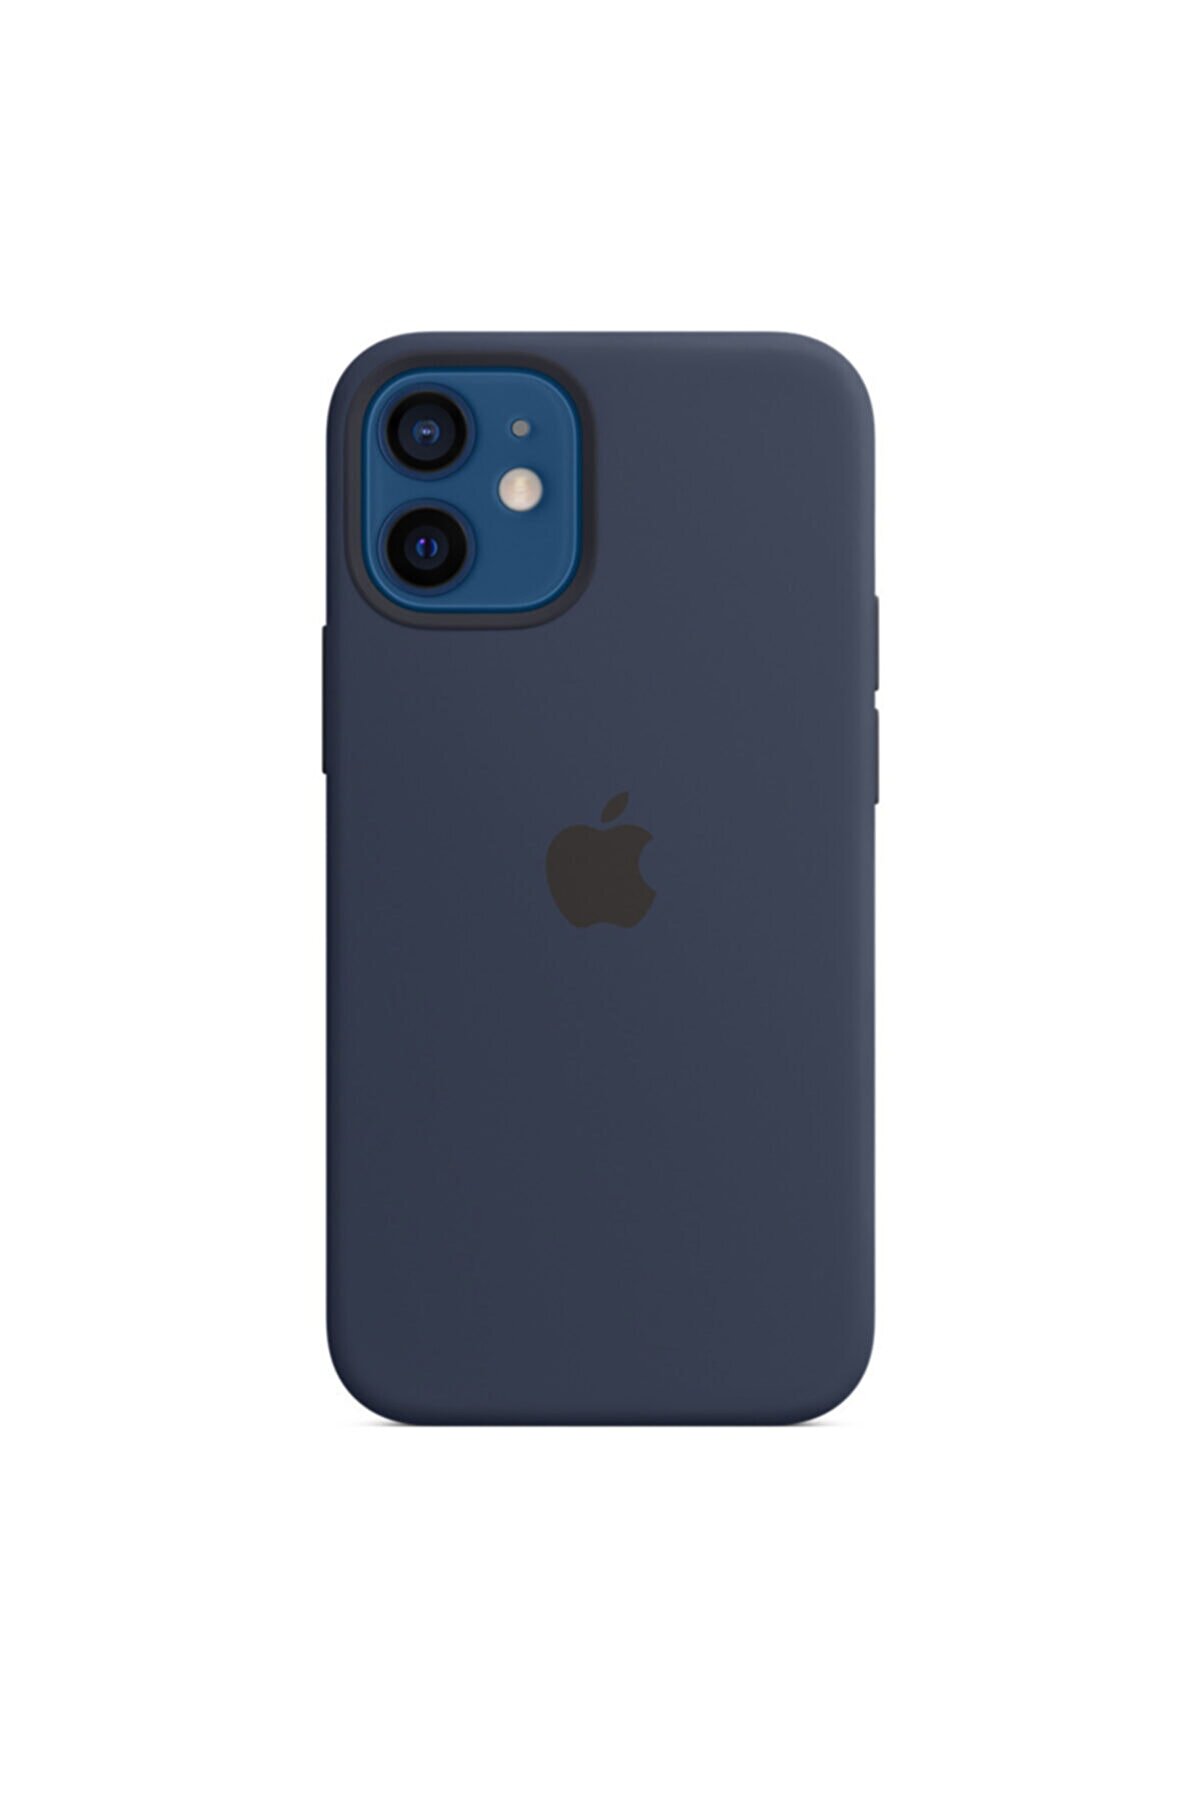 Apple Iphone 12 Mini Silikon Kılıf Magsafe Derin Koyu Lacivert - Mhku3zm/a